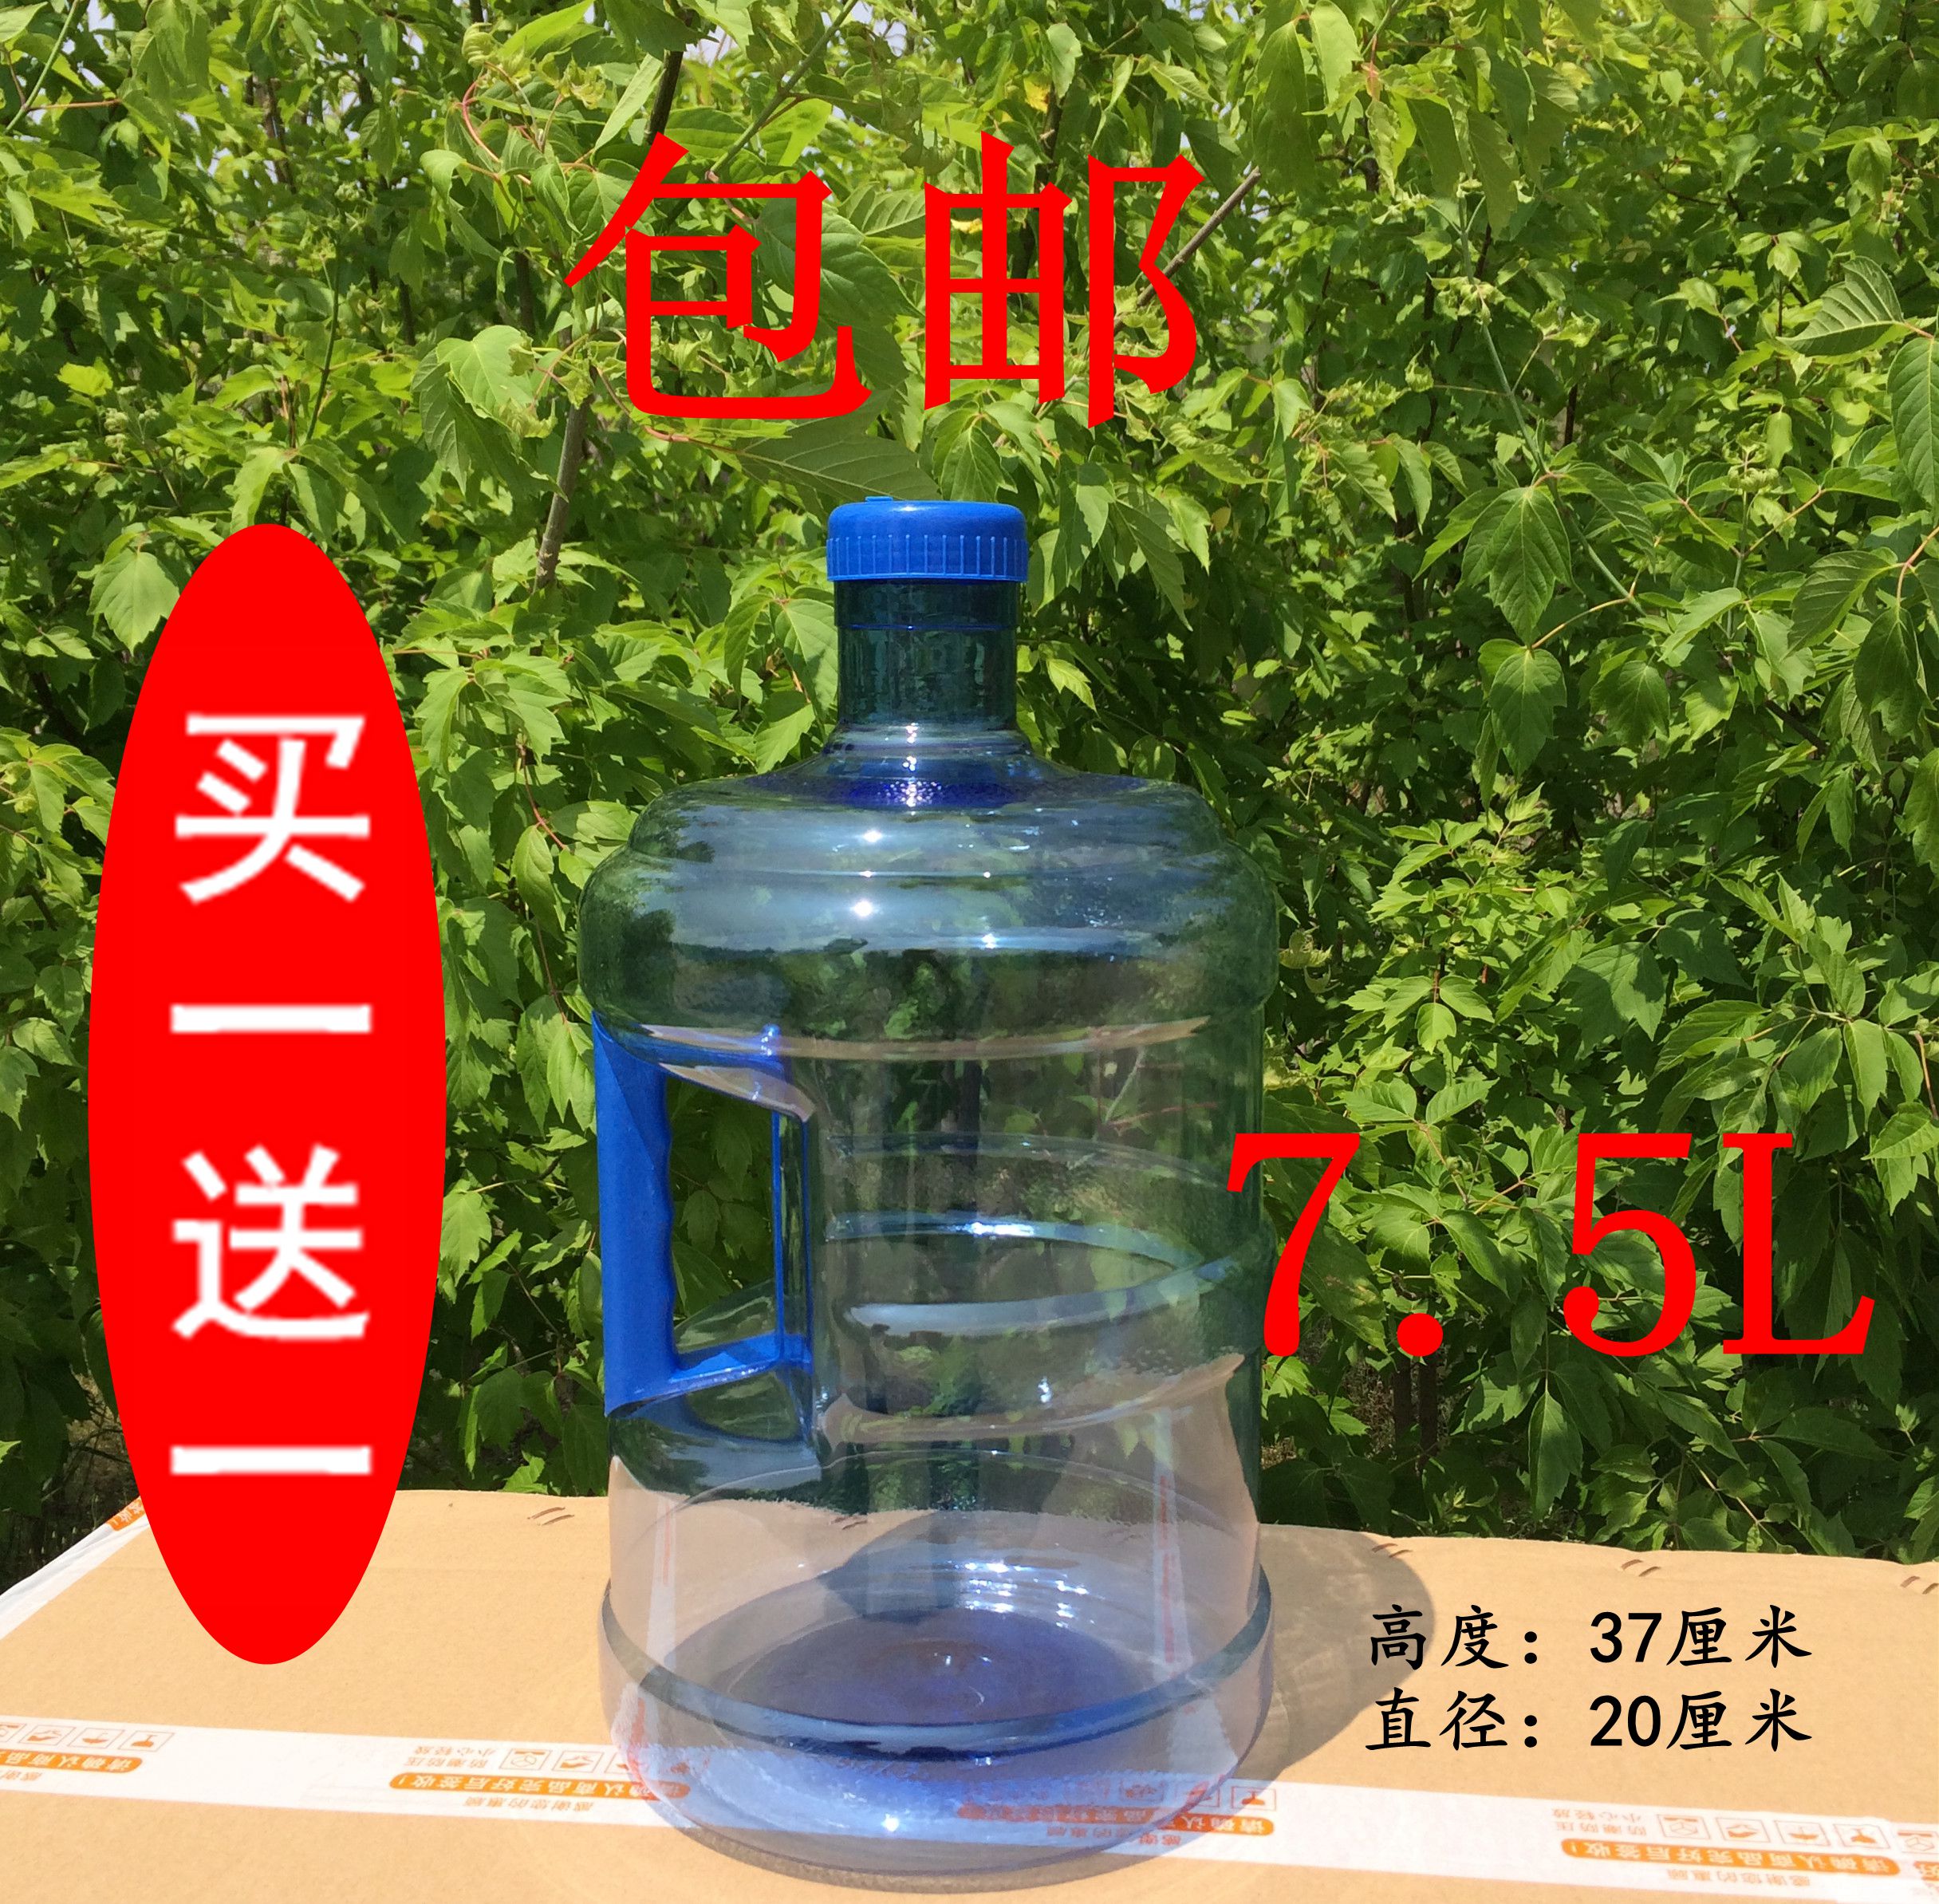 饮水桶7.5升pet饮水桶7.5l饮水桶5升饮水桶售水机7.5升纯净水桶